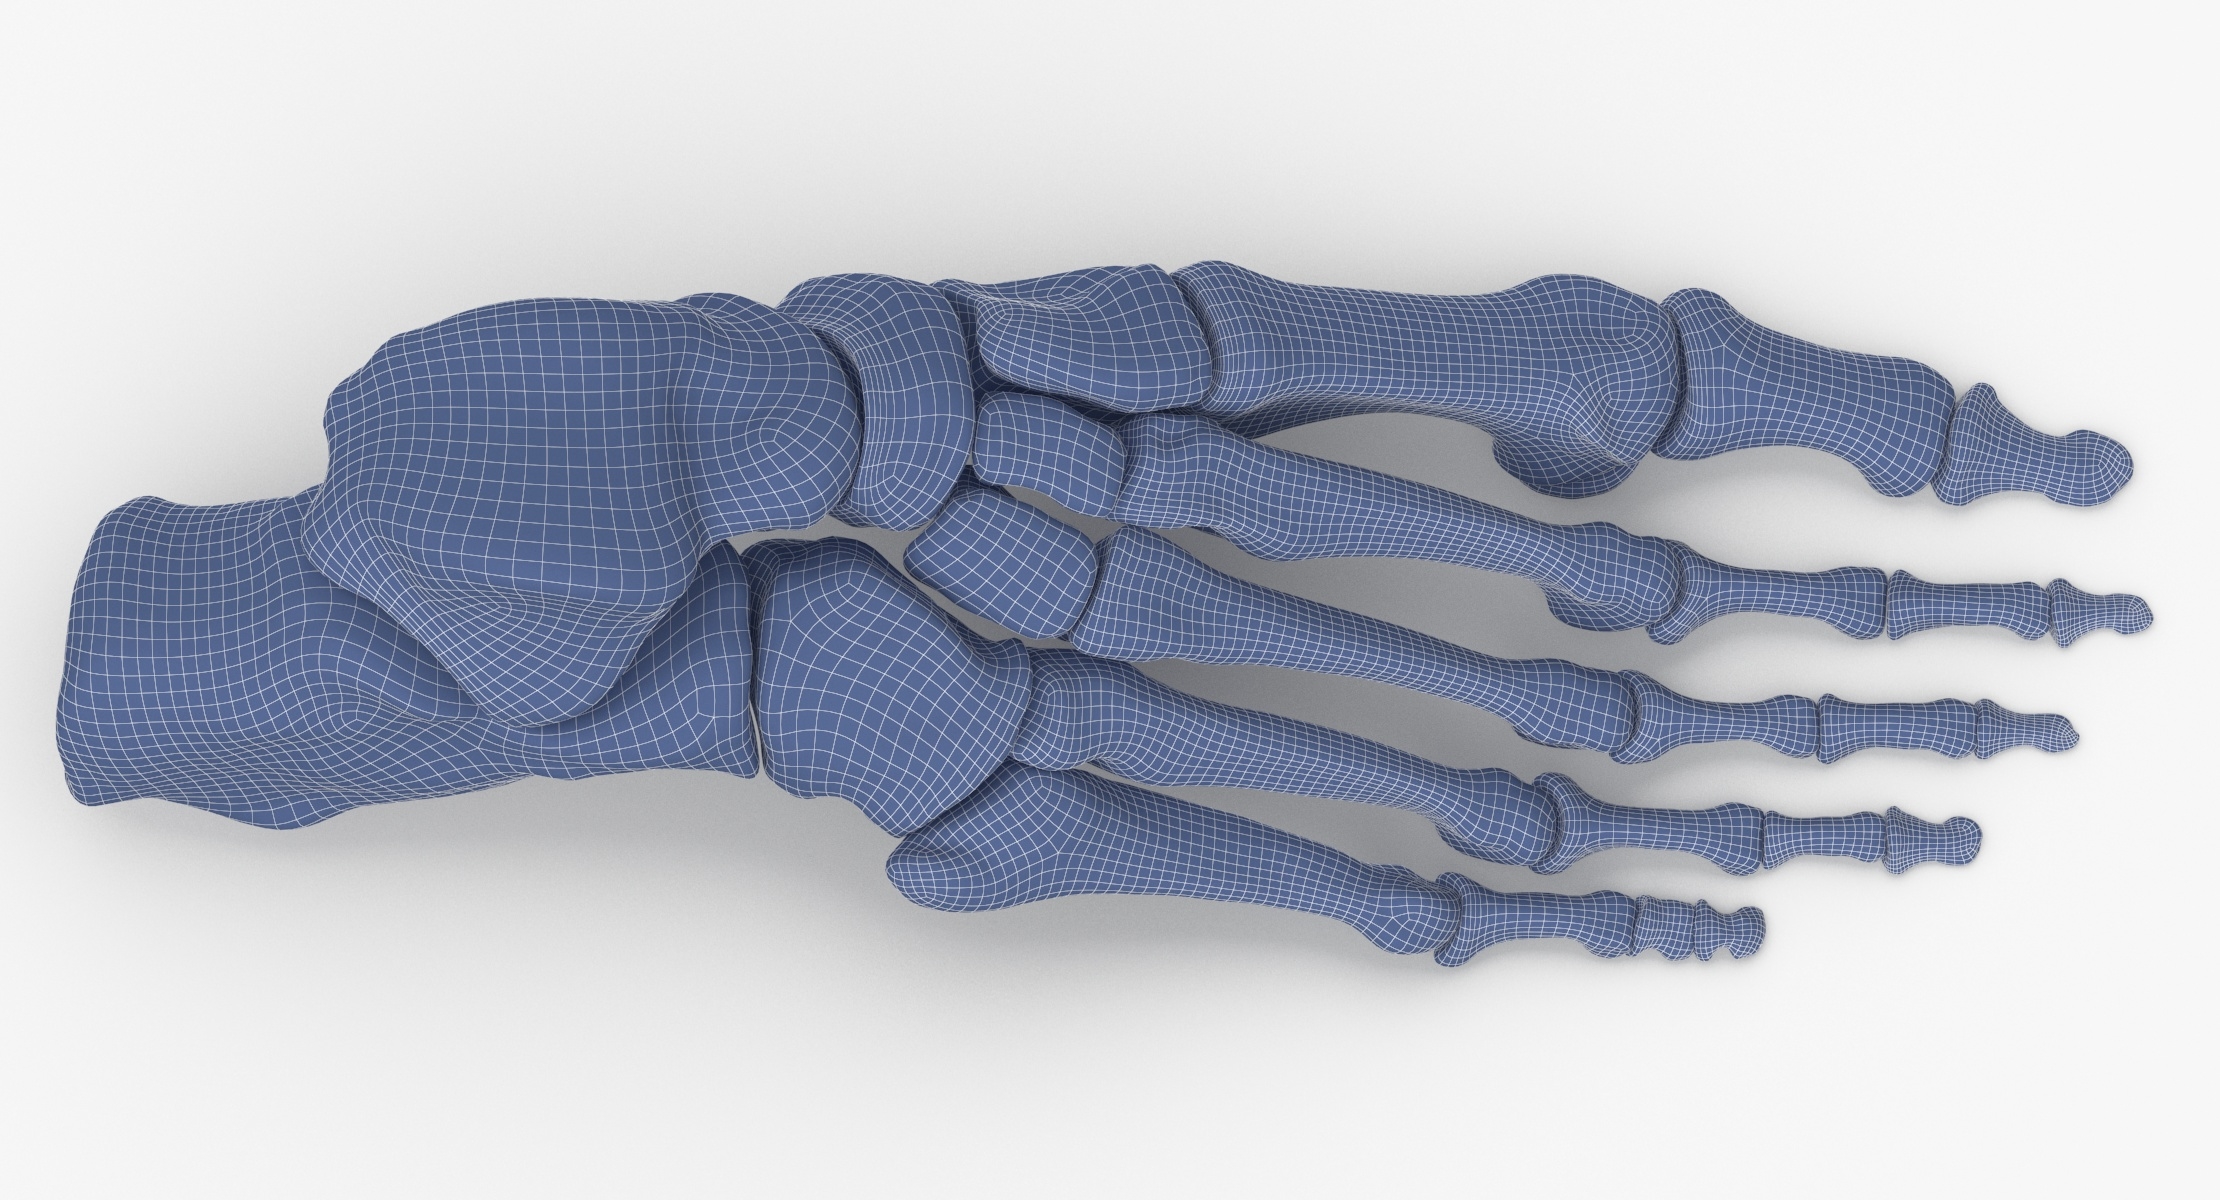 Human foot bones anatomy 3D model - TurboSquid 1558150